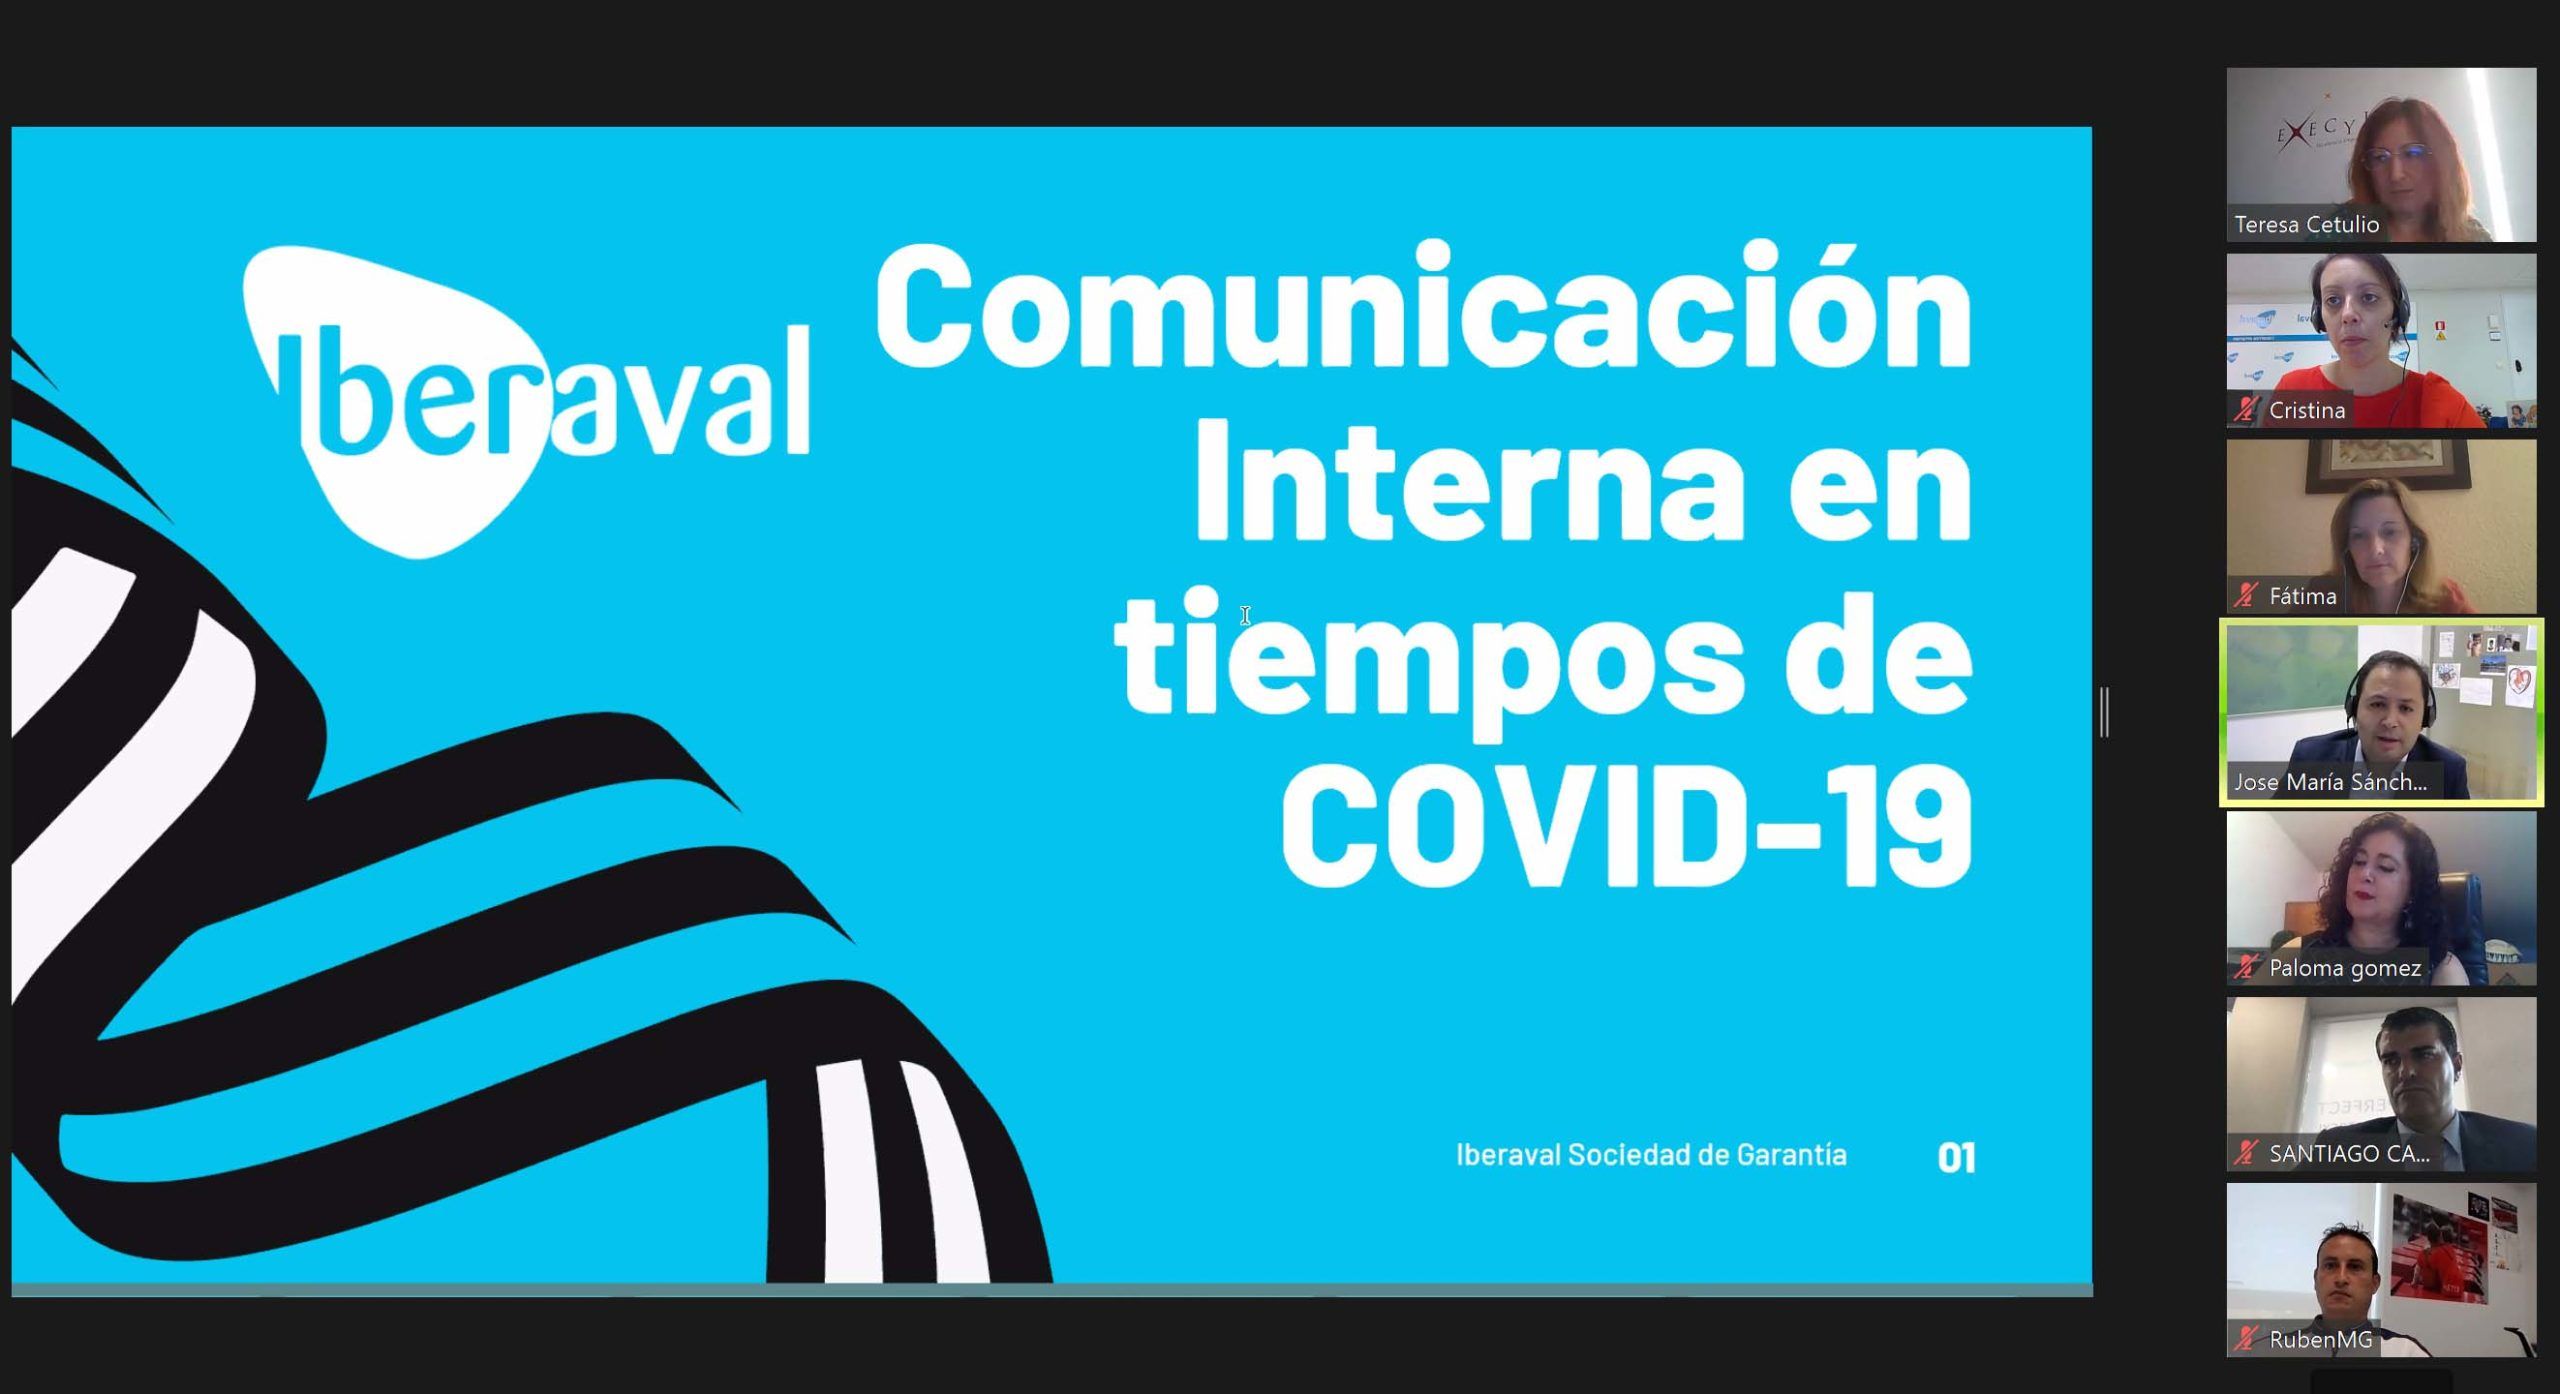 Presentación de Iberaval sobre Comunicación Interna